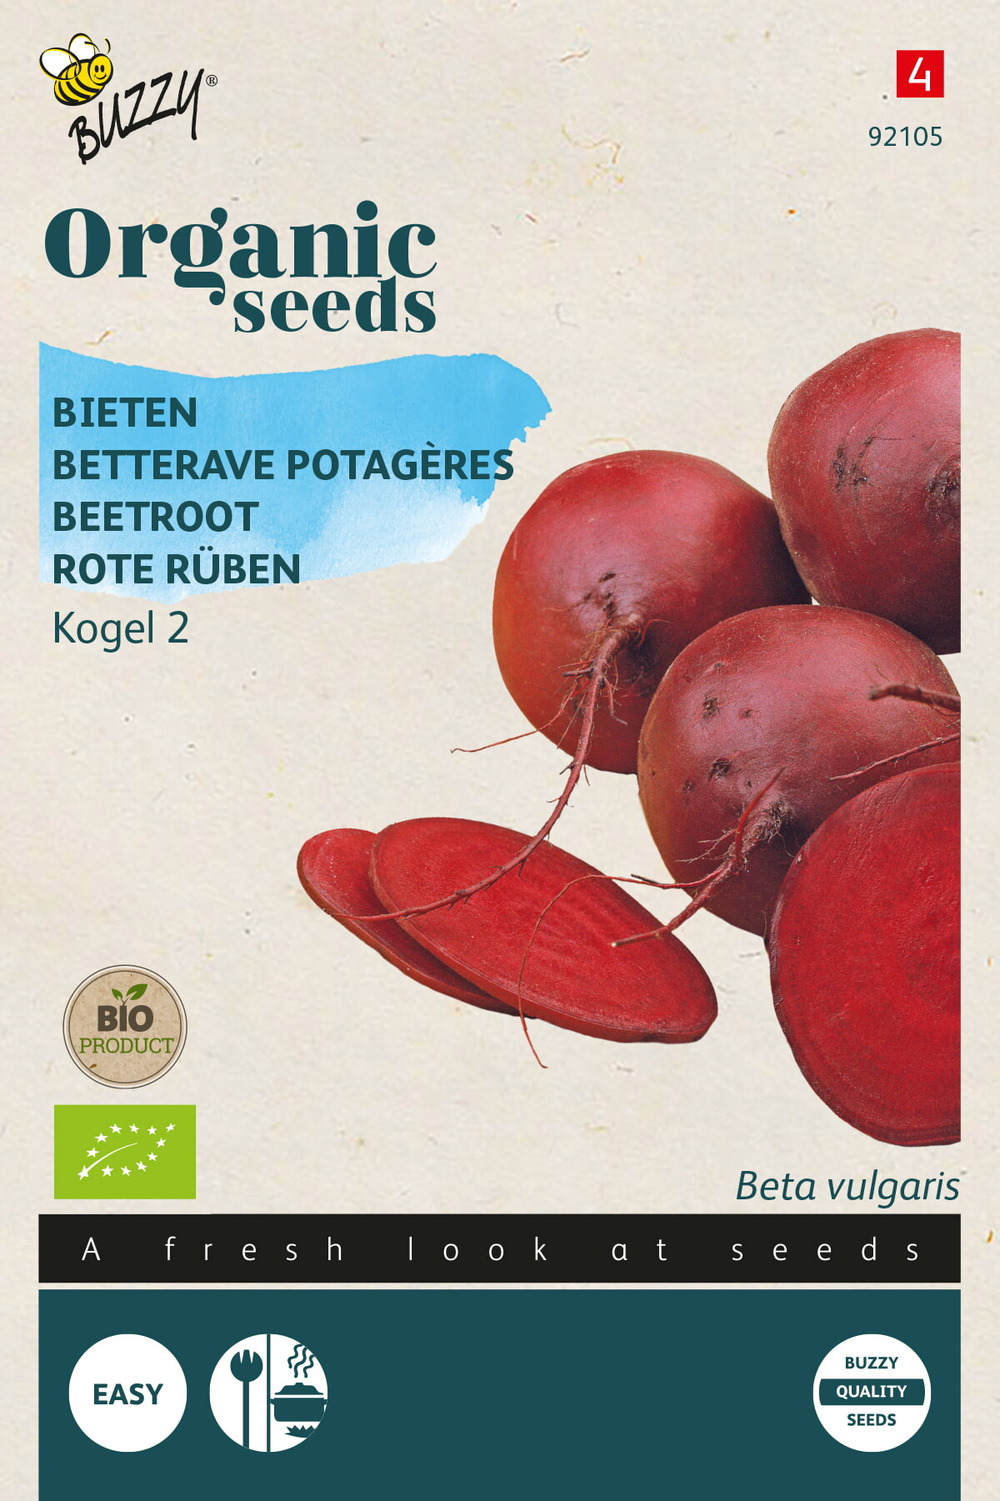 Buzzy organic betteraves potagére detroit 2(bio) - ca. 3 gr (livraison gratuite)